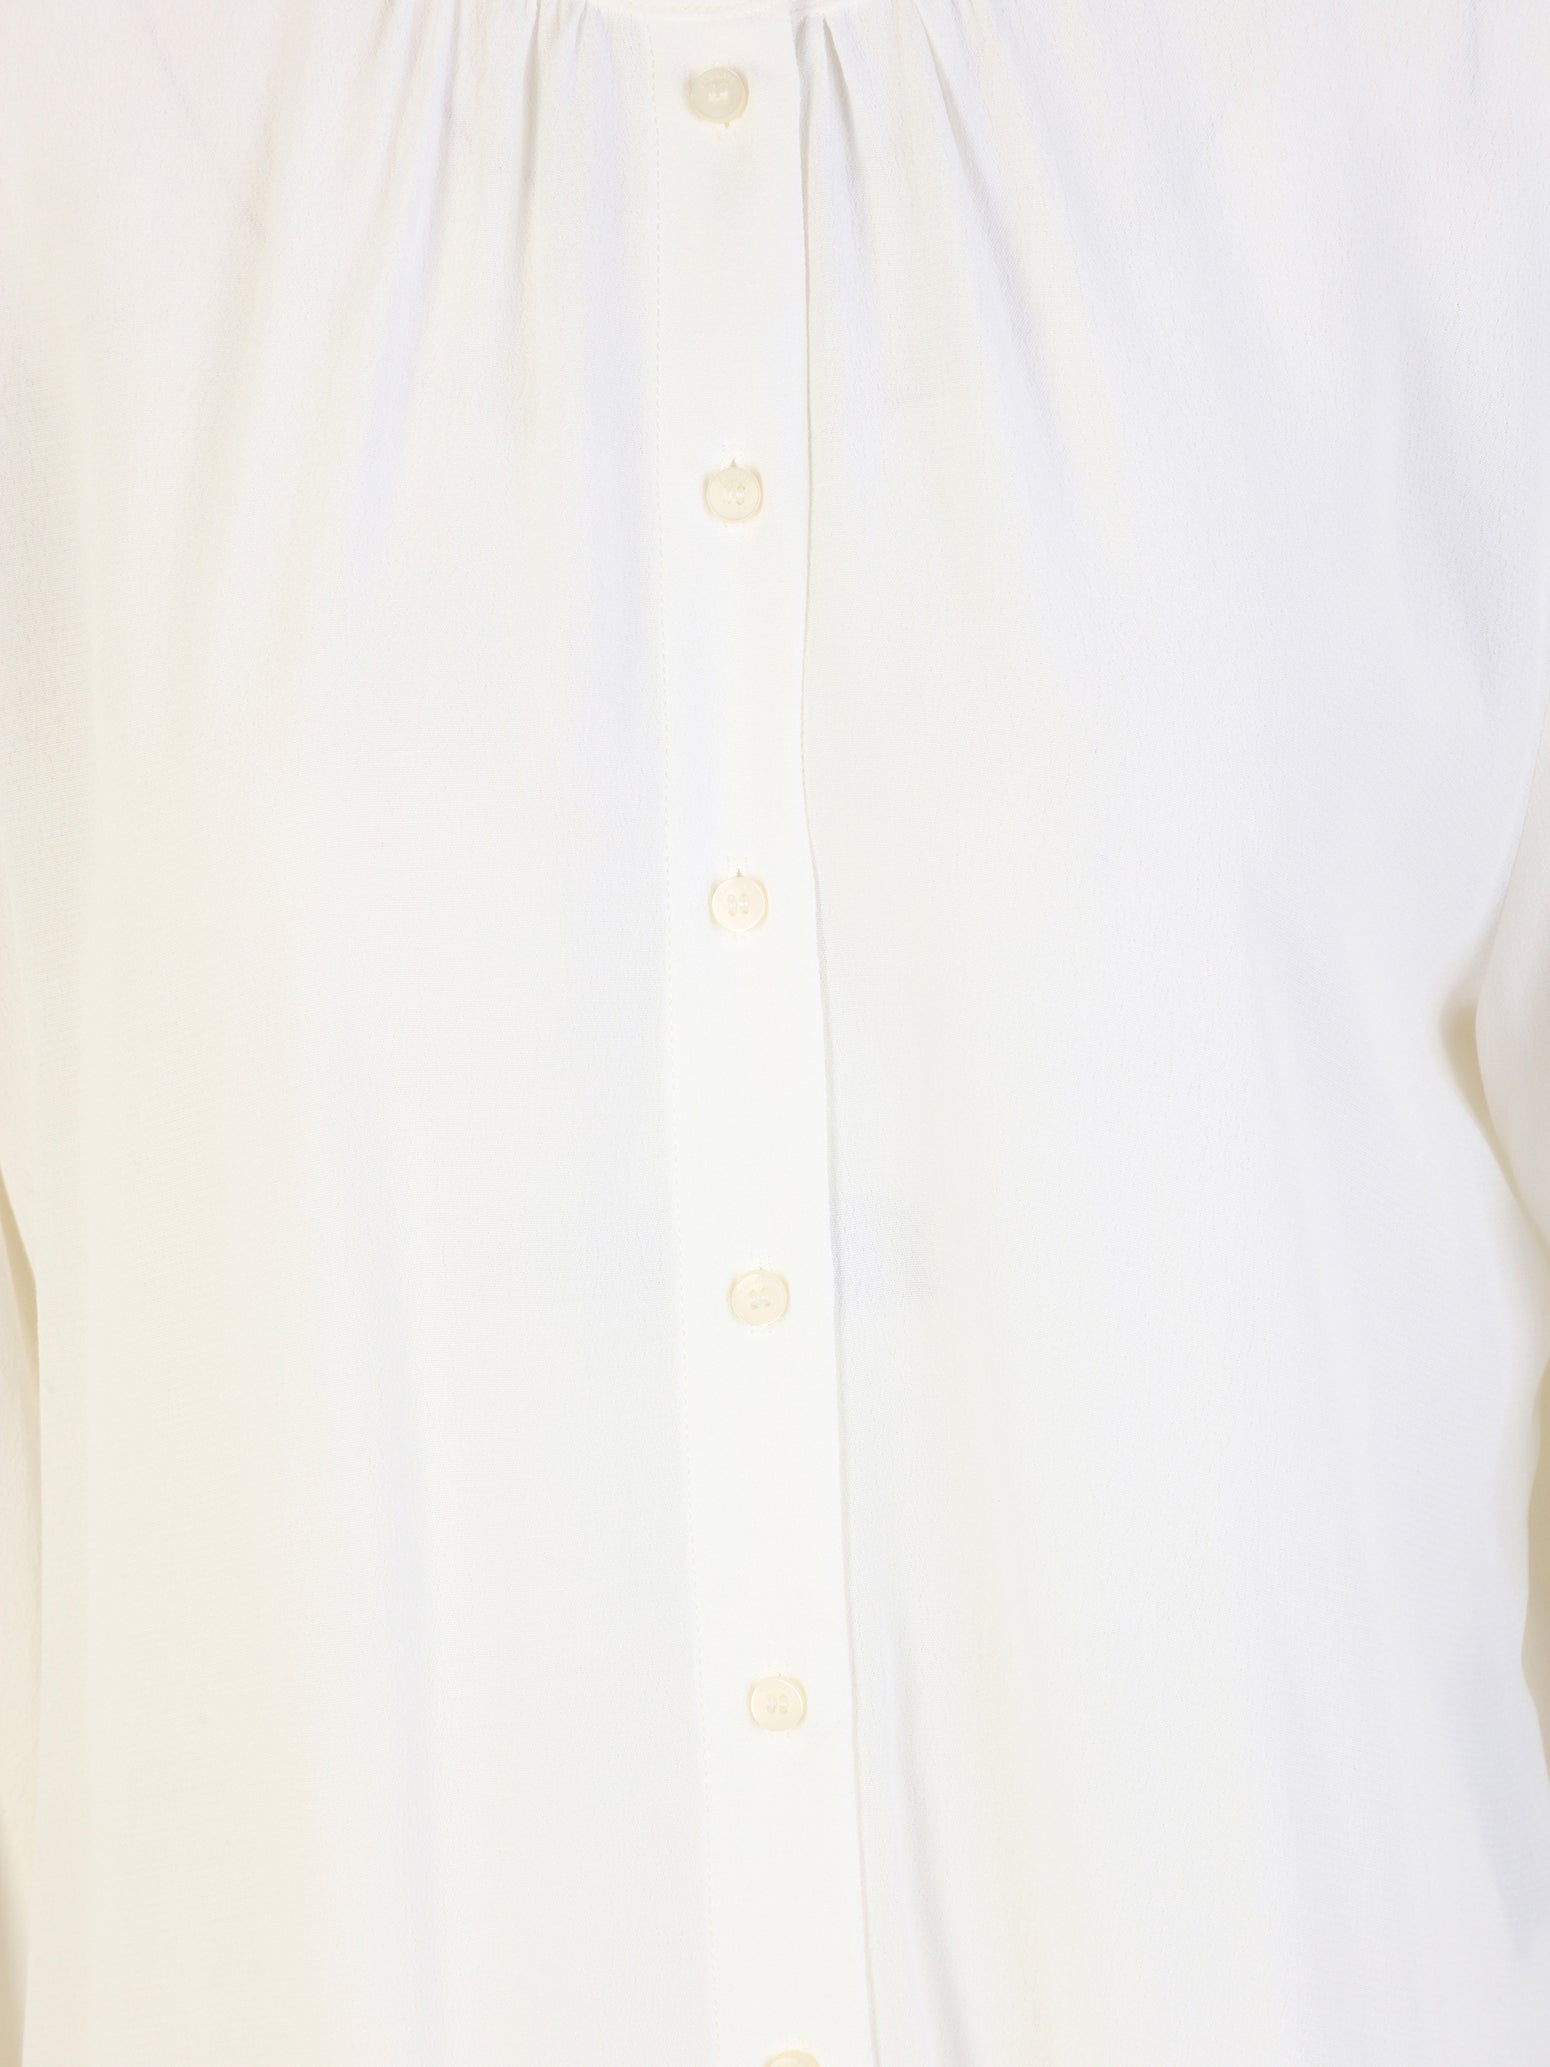 Annecy Standup Collar Blouse in Bright White Hemden Tamaris   